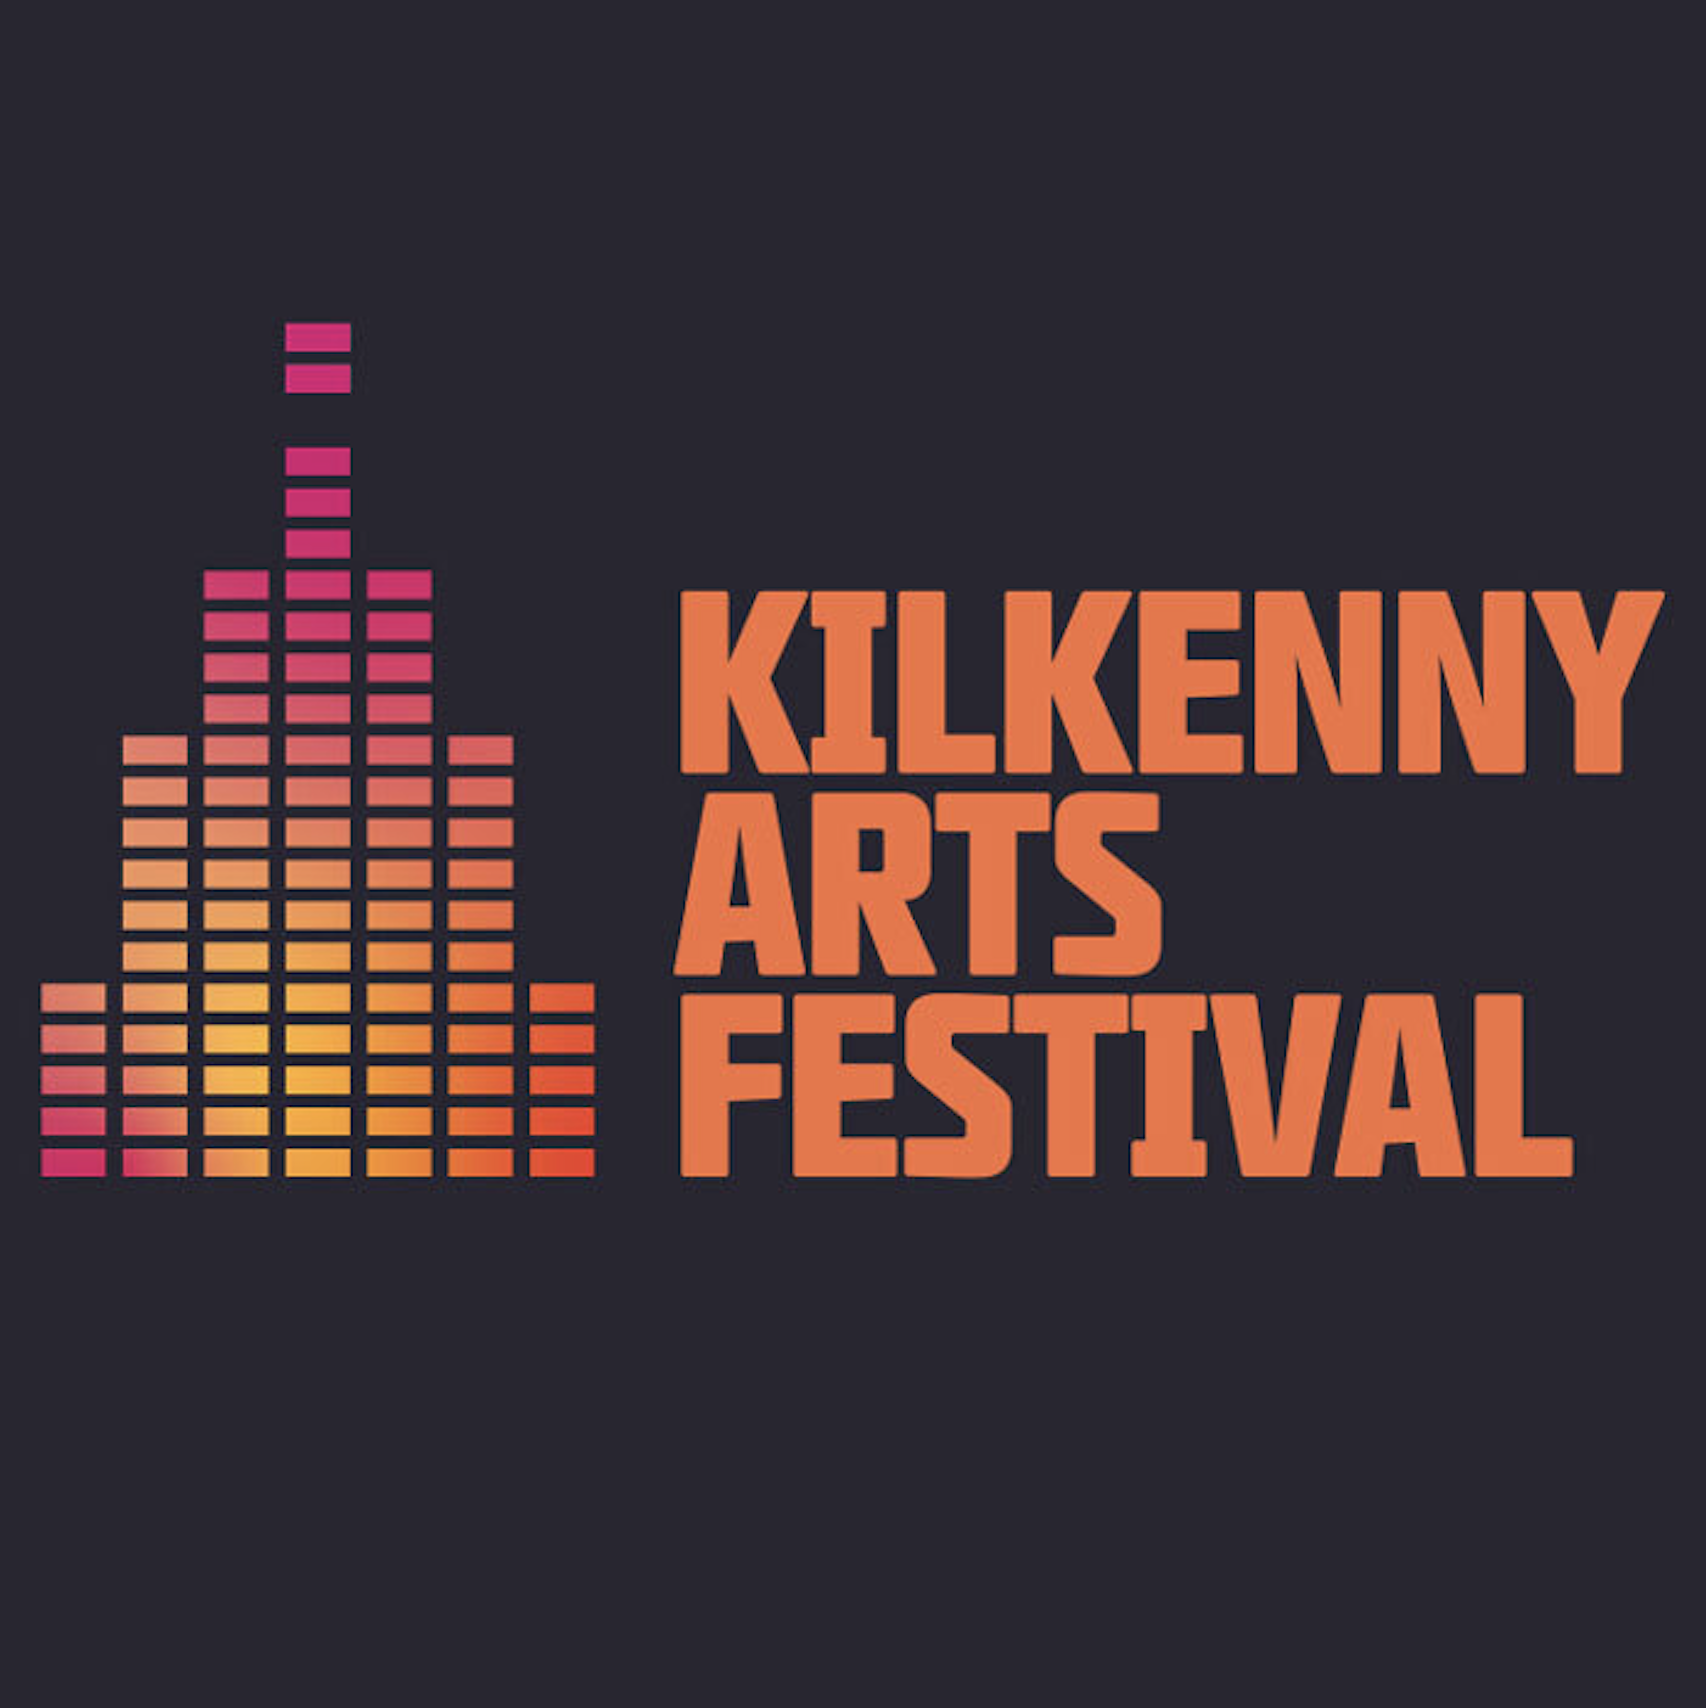 Kilkenny-arts-festival-logo